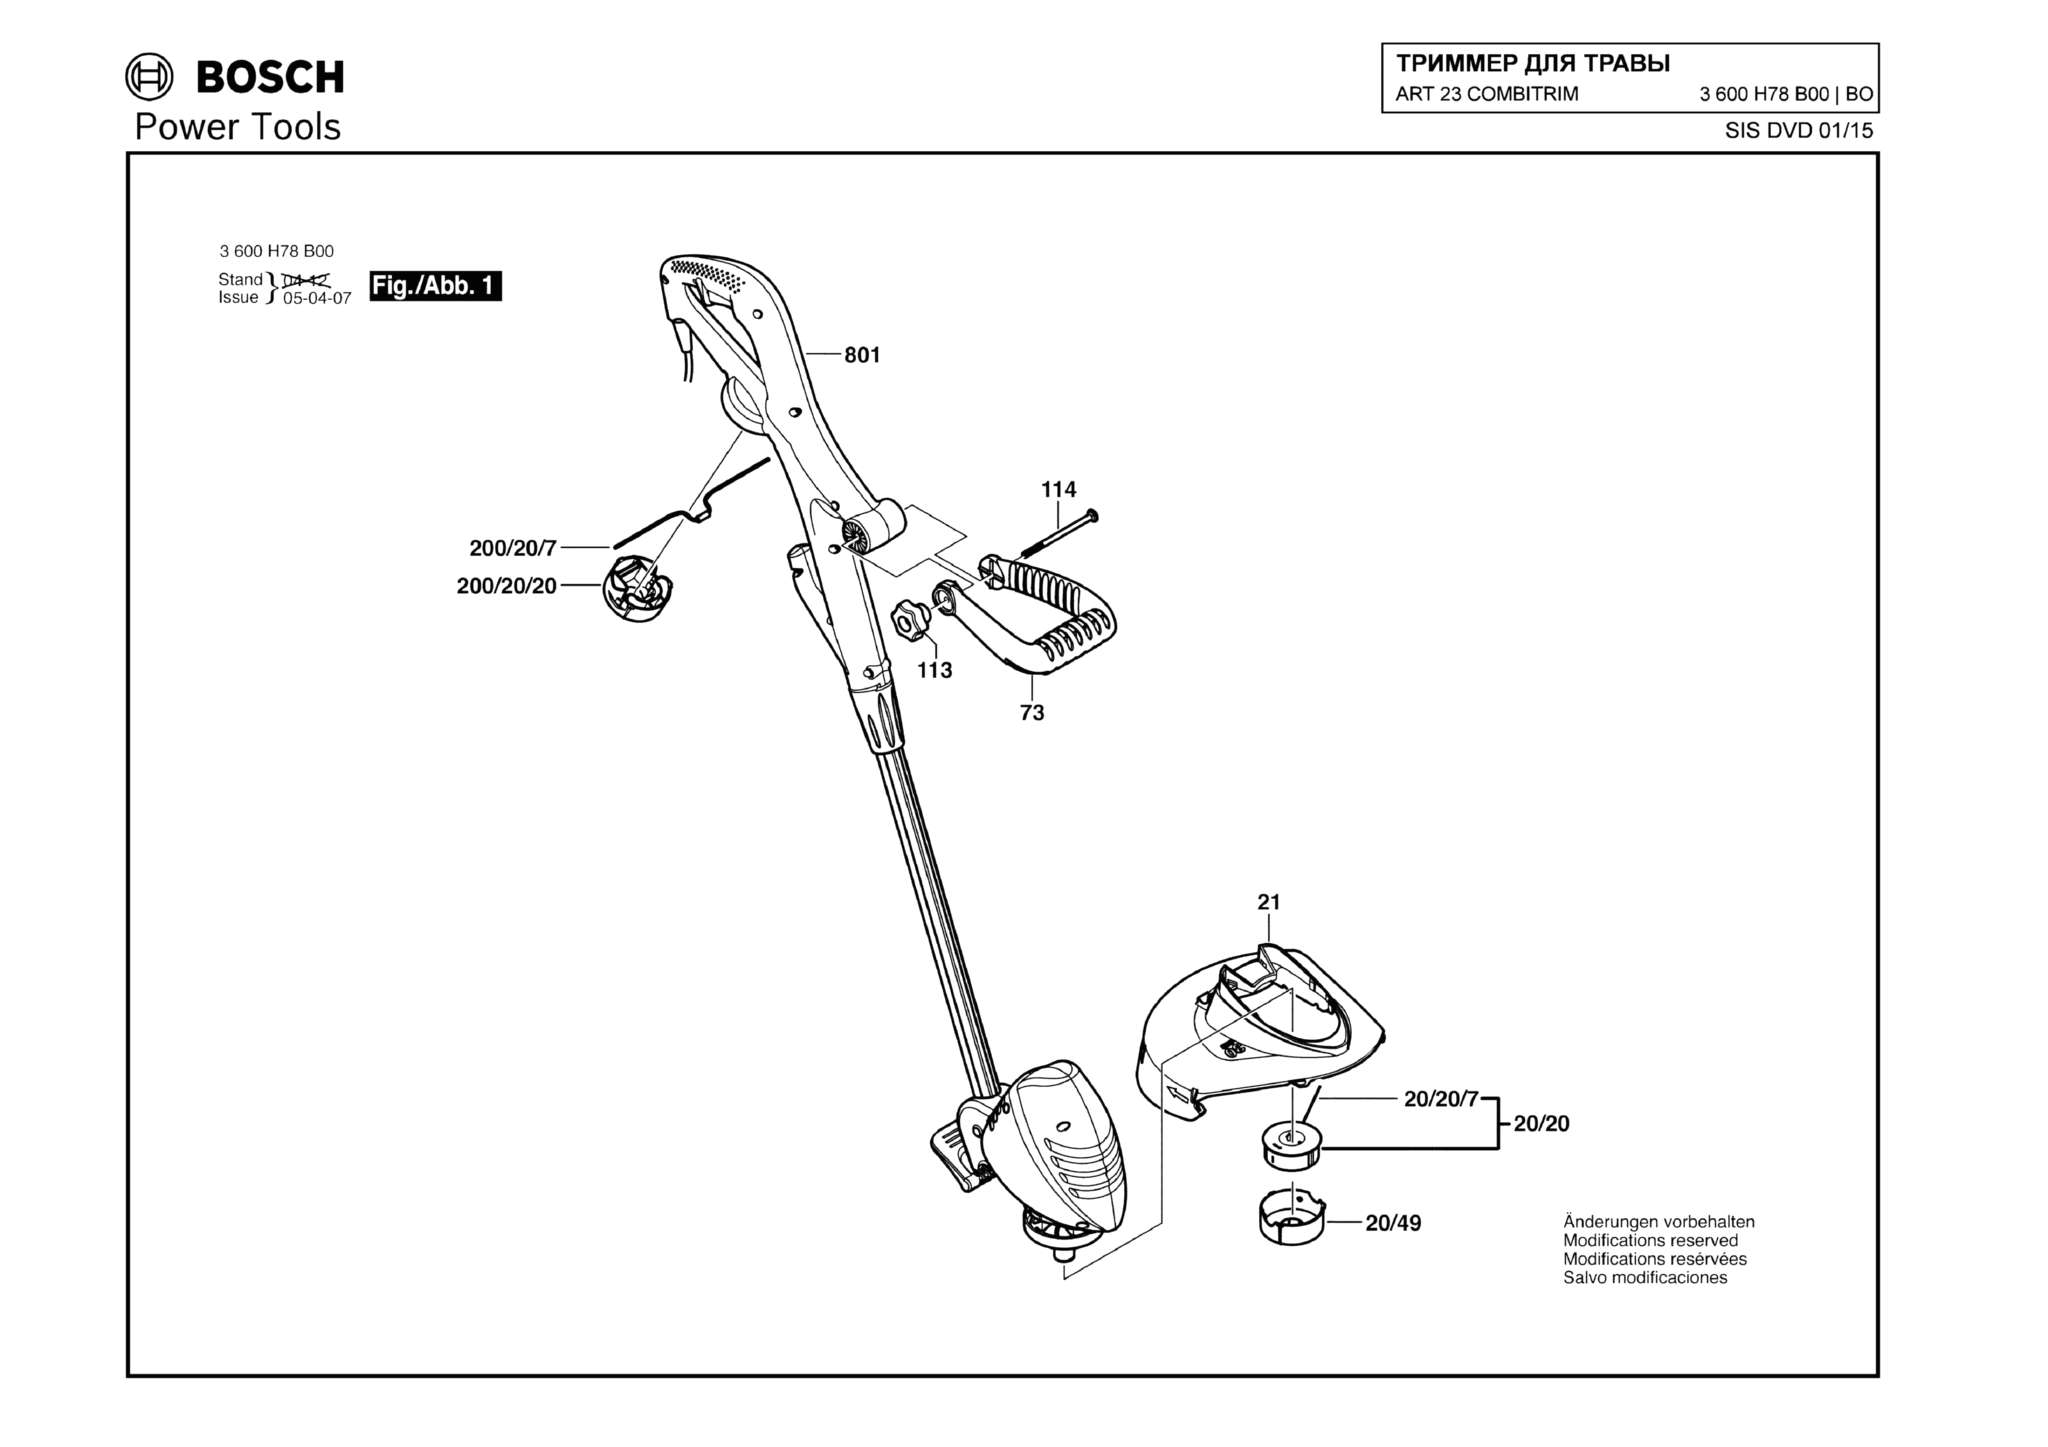 Запчасти, схема и деталировка Bosch ART 23 COMBITRIM (ТИП 3600H78B00)